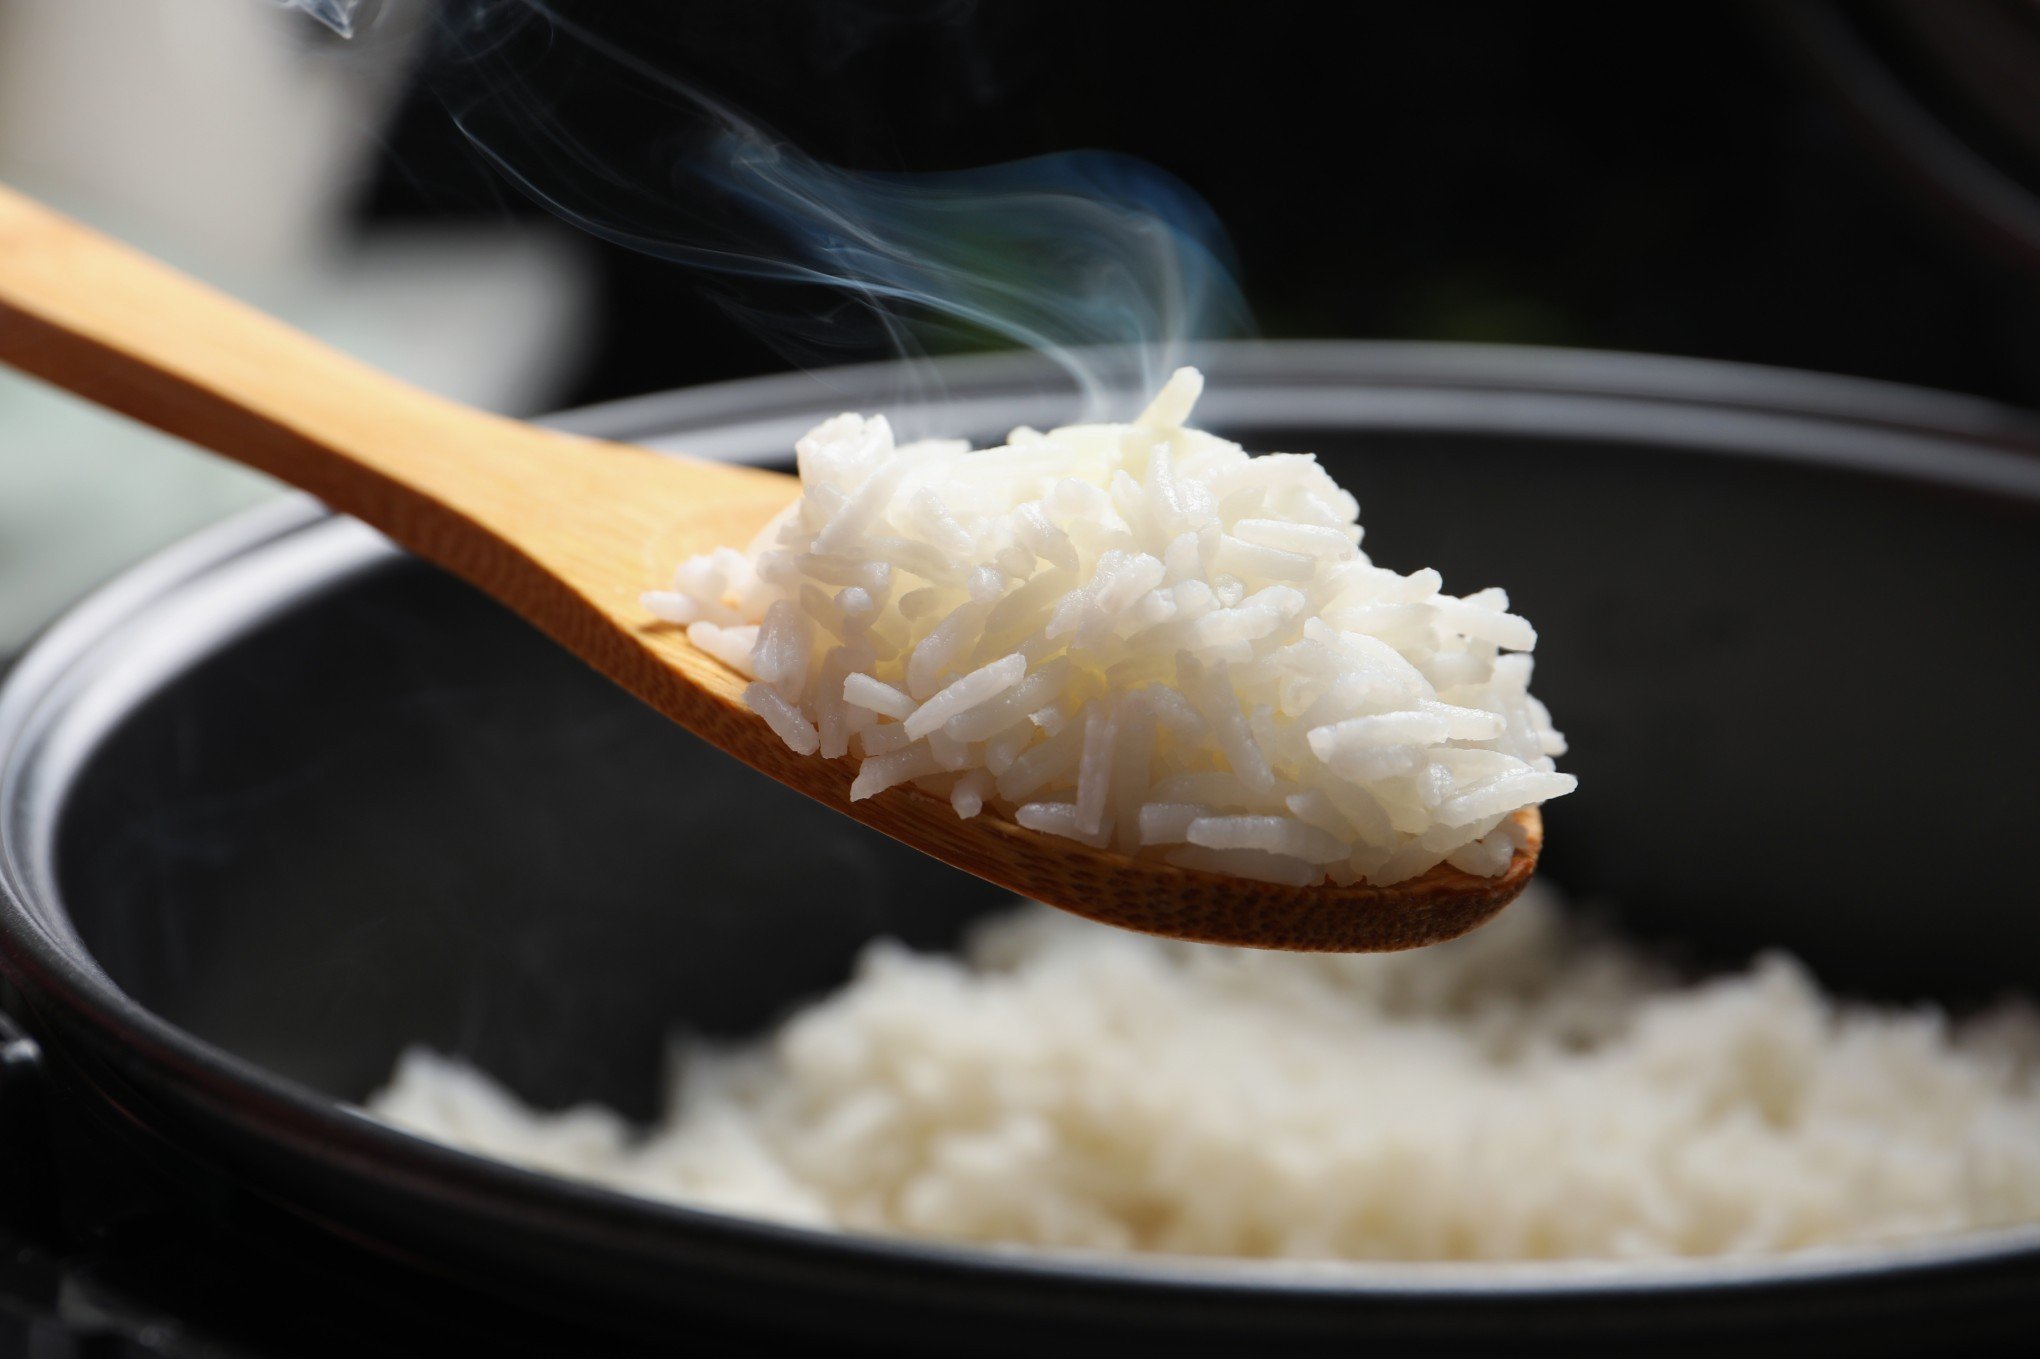 CATÁSTROFE NO RS: "Impactos de curtíssimo prazo", diz economista sobre alta do arroz e outros alimentos